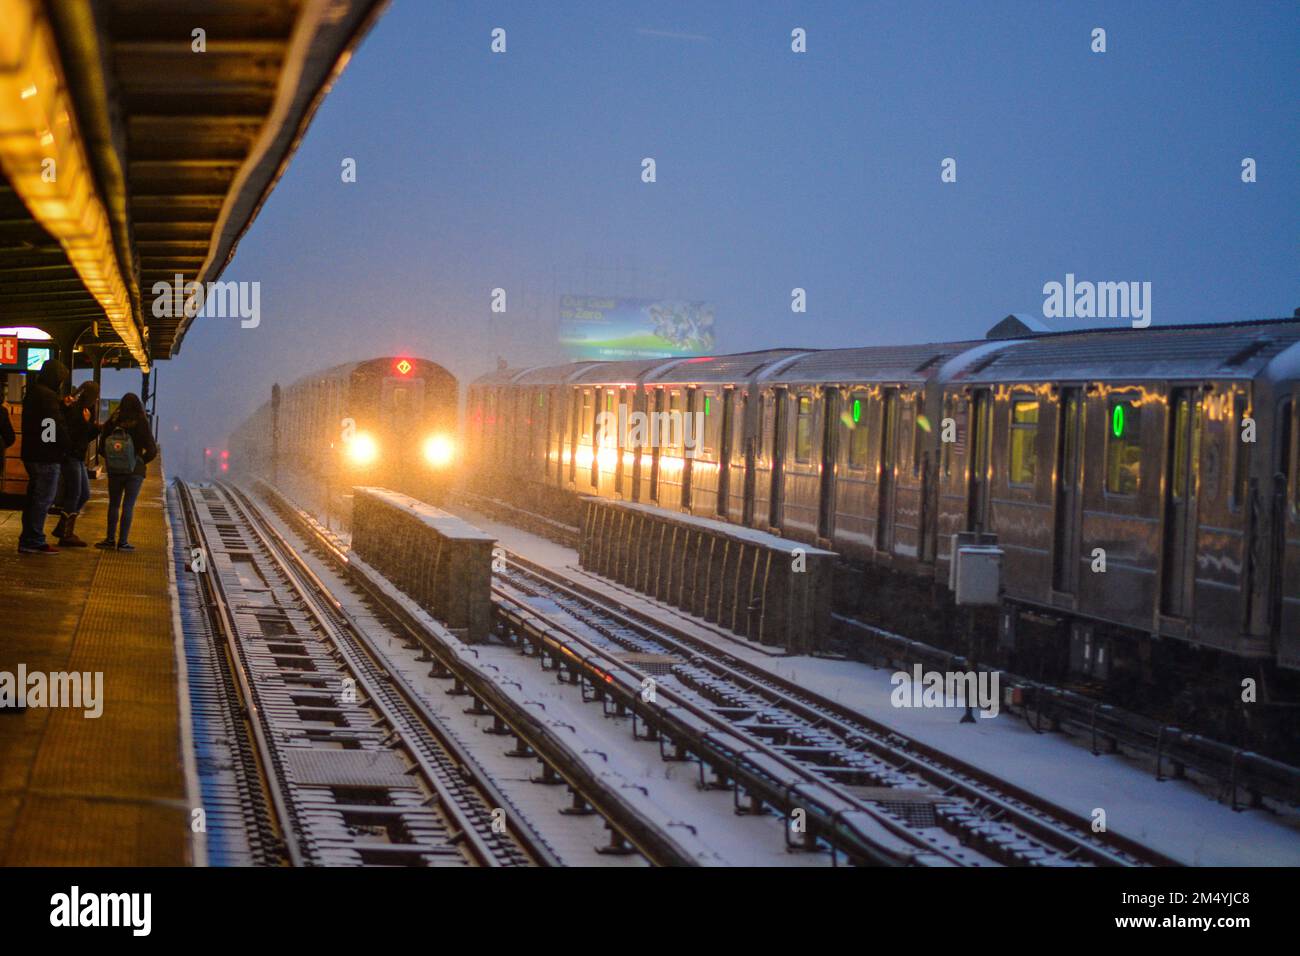 U-Bahn Bahnsteig New York City Transit Öffentliche Verkehrsmittel Kopierraum Grafikressourcen Stockfoto